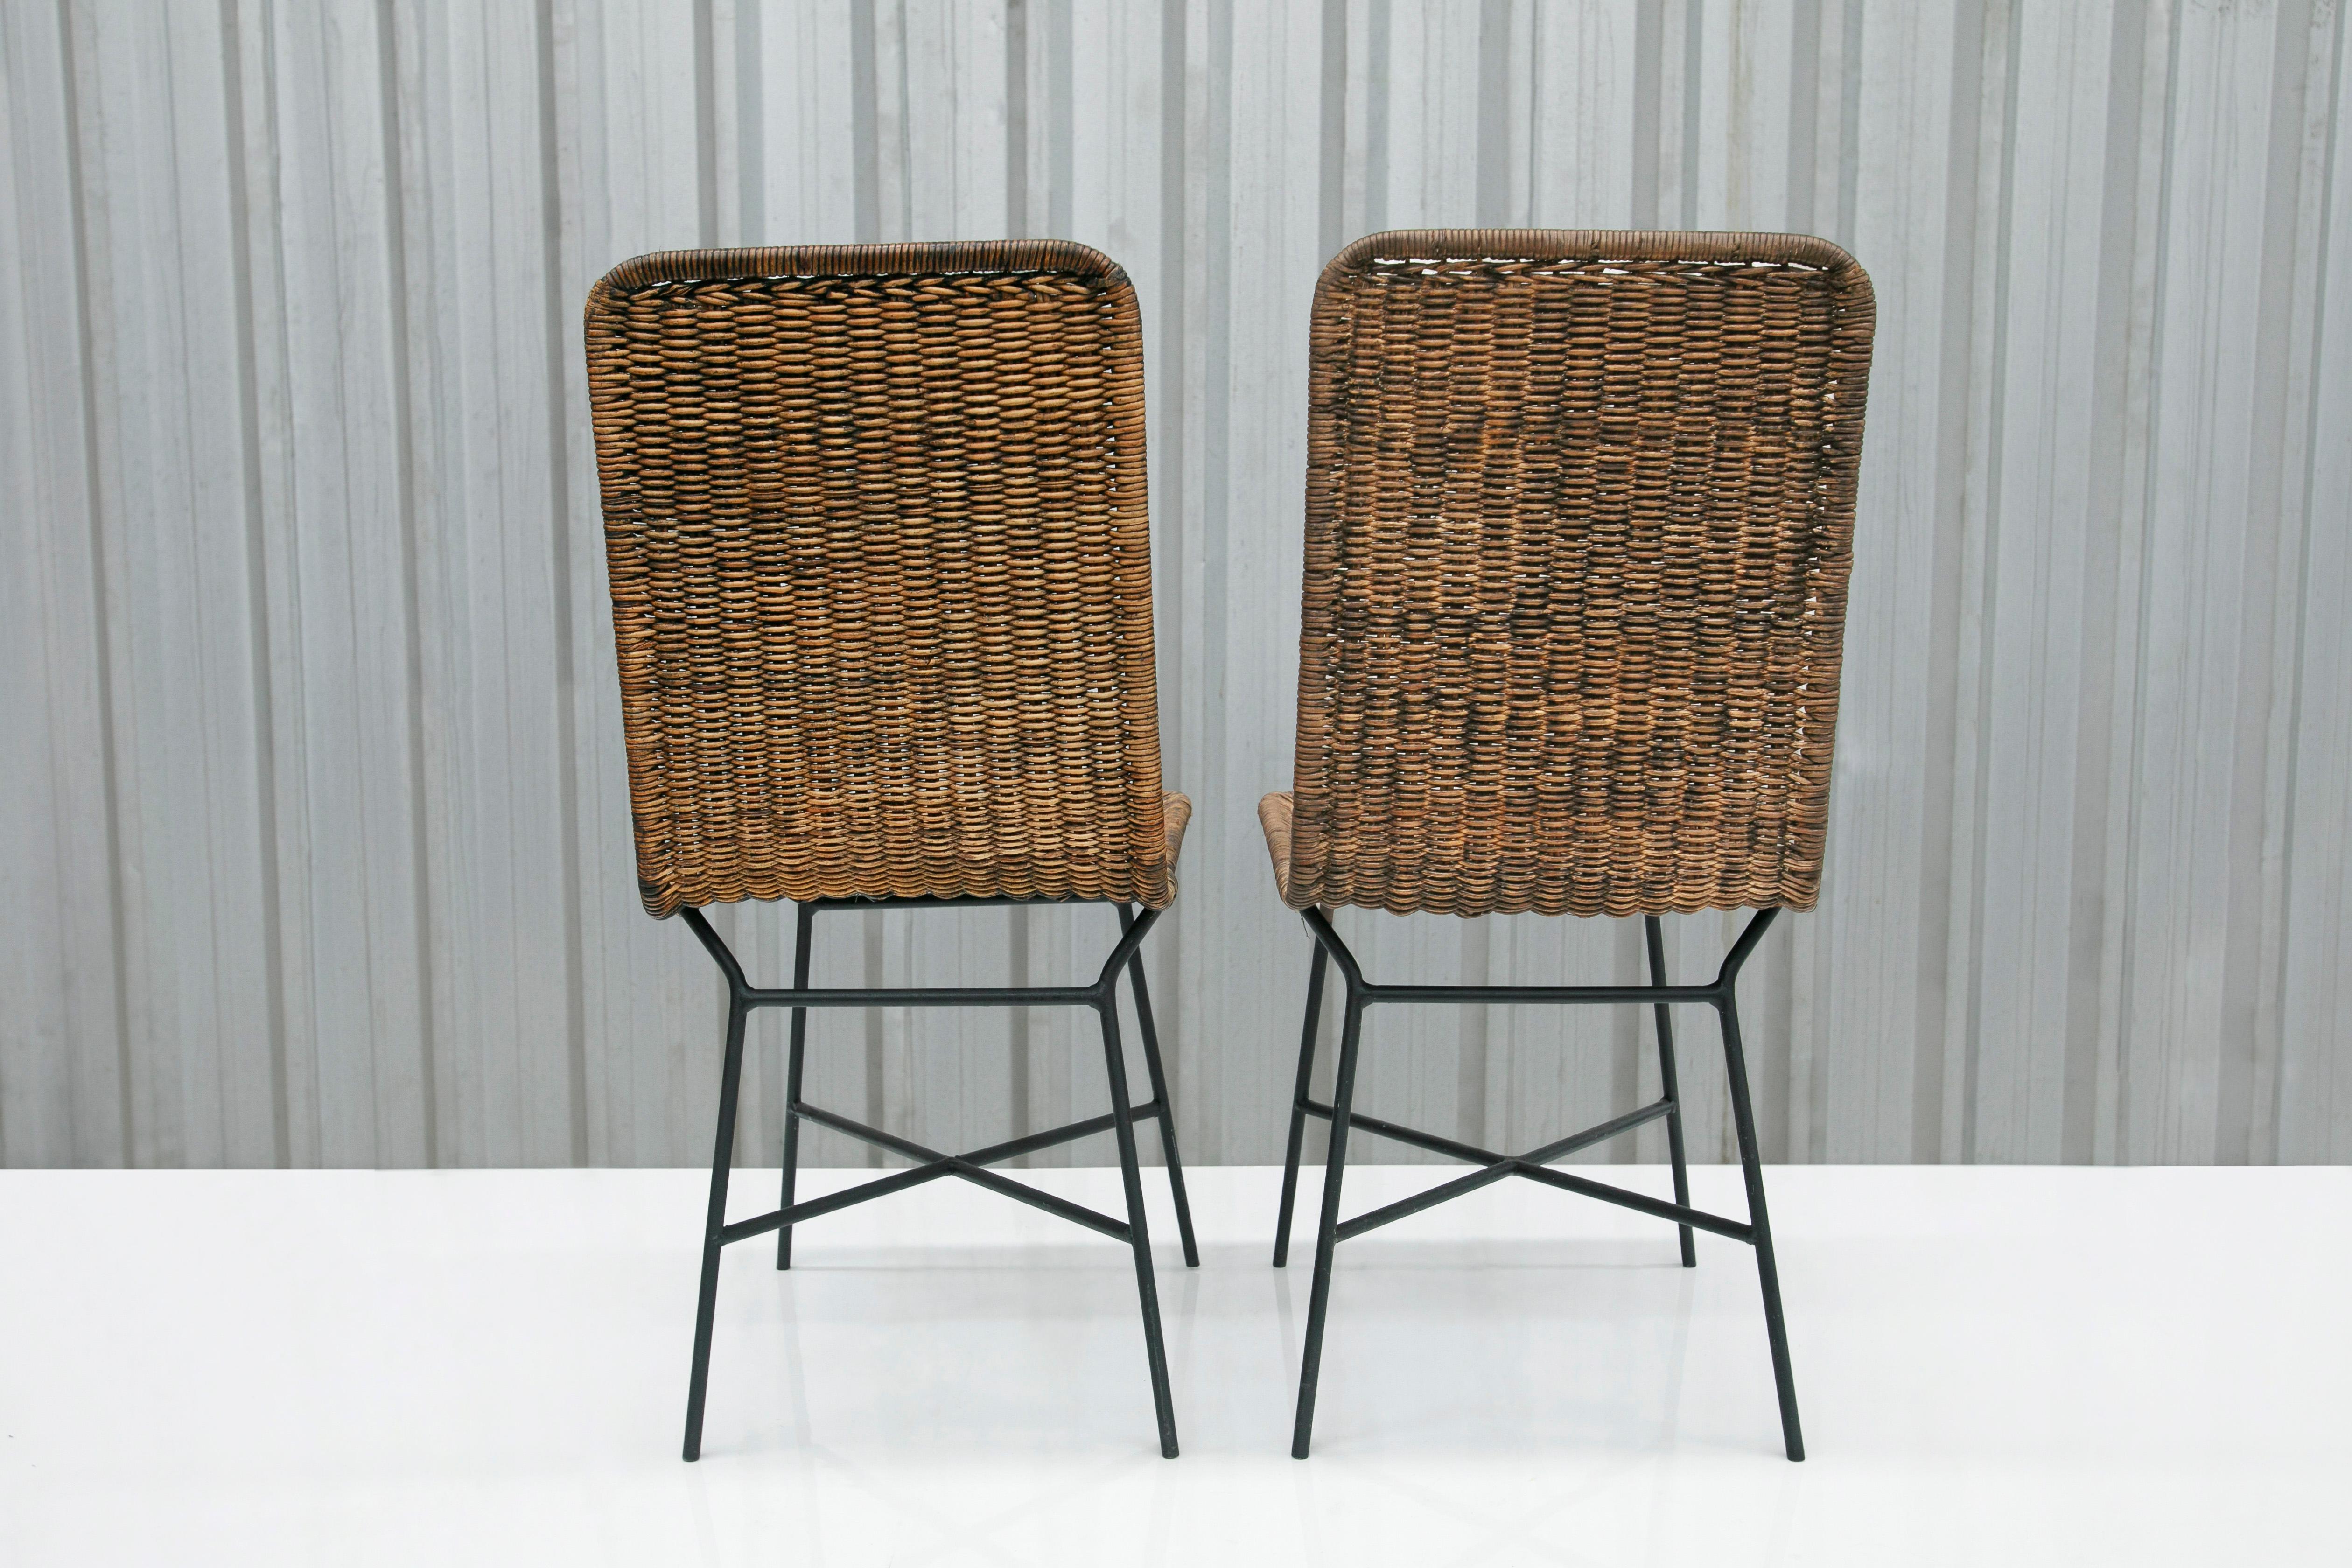 Brasilianische moderne Stühle aus Rohrgeflecht und Metall von Carlo Hauner, 1950er Jahre, Brasilien (Geflecht) im Angebot